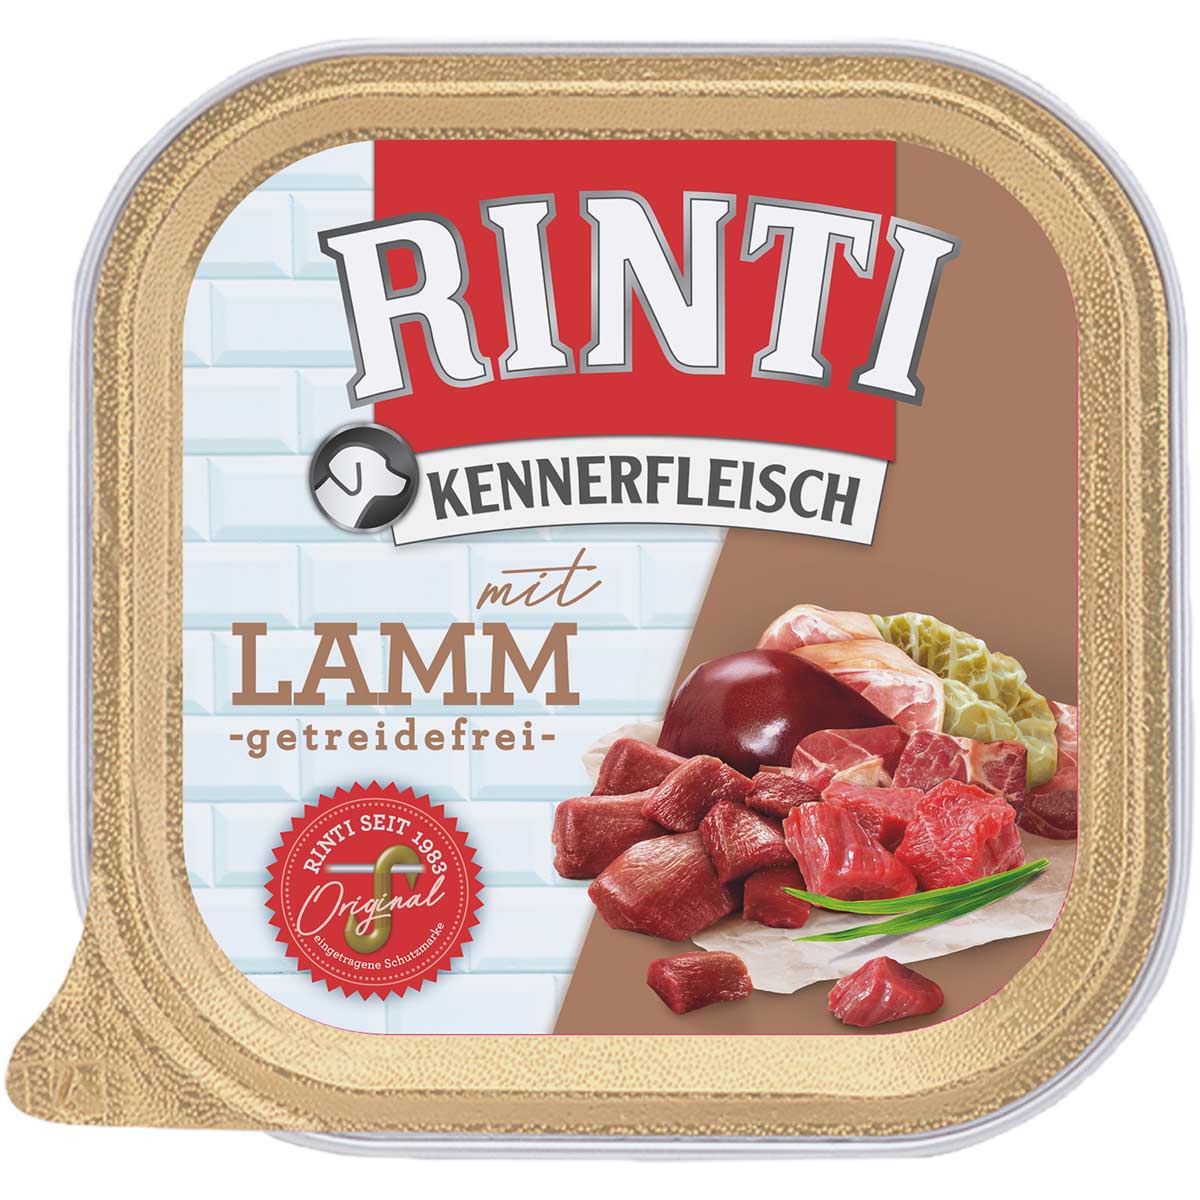 Rinti Kennerfleisch mit Lamm 18x300g von Rinti